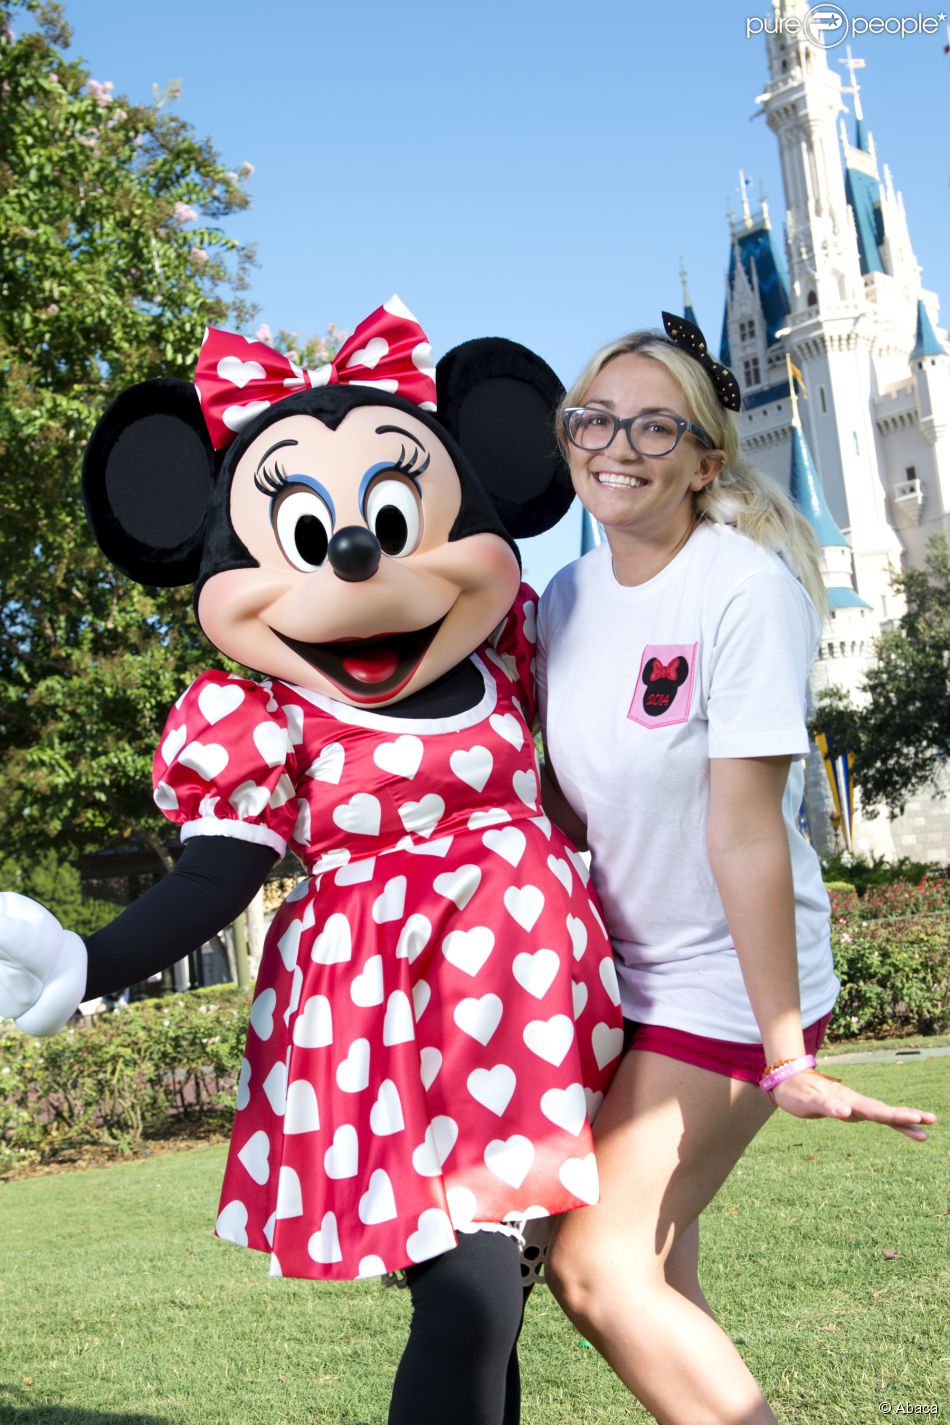  La chanteuse Jamie Lynn Spears pose avec le personnage de Minnie Mouse, &amp;agrave; Disney World en Floride, le vendredi 14 ao&amp;ucirc;t 2014. 